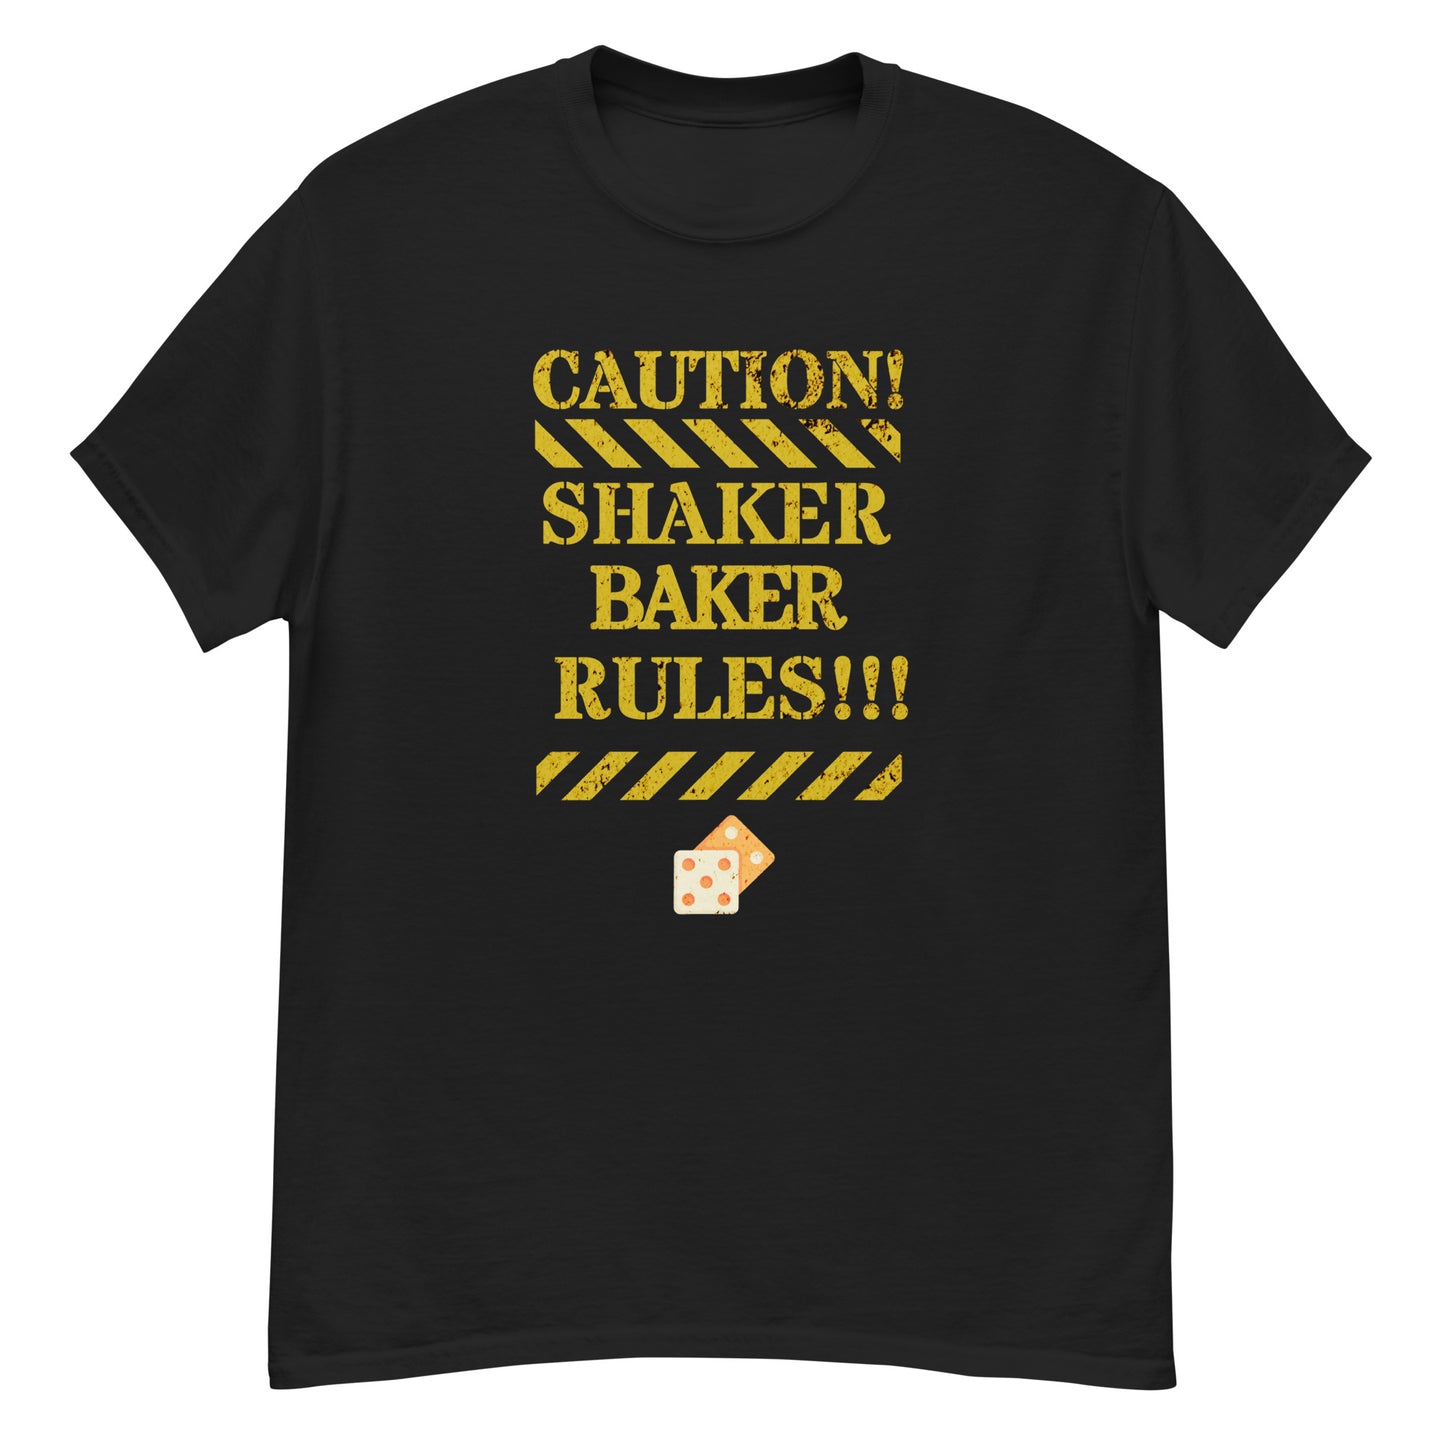 Shaker Baker Rules!!!